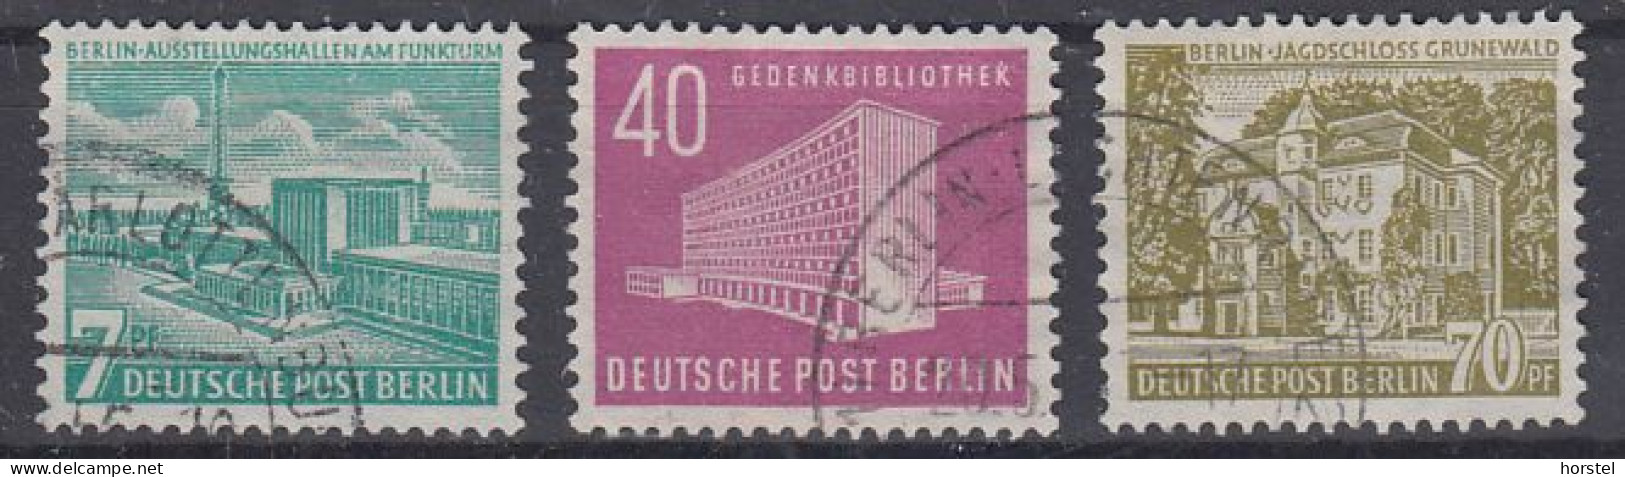 Deutschland Mi 121-23 Berliner Bauten - Amerika Gedenkbibliothek - Jagdschloß Grunewald - Funkturm - Usati